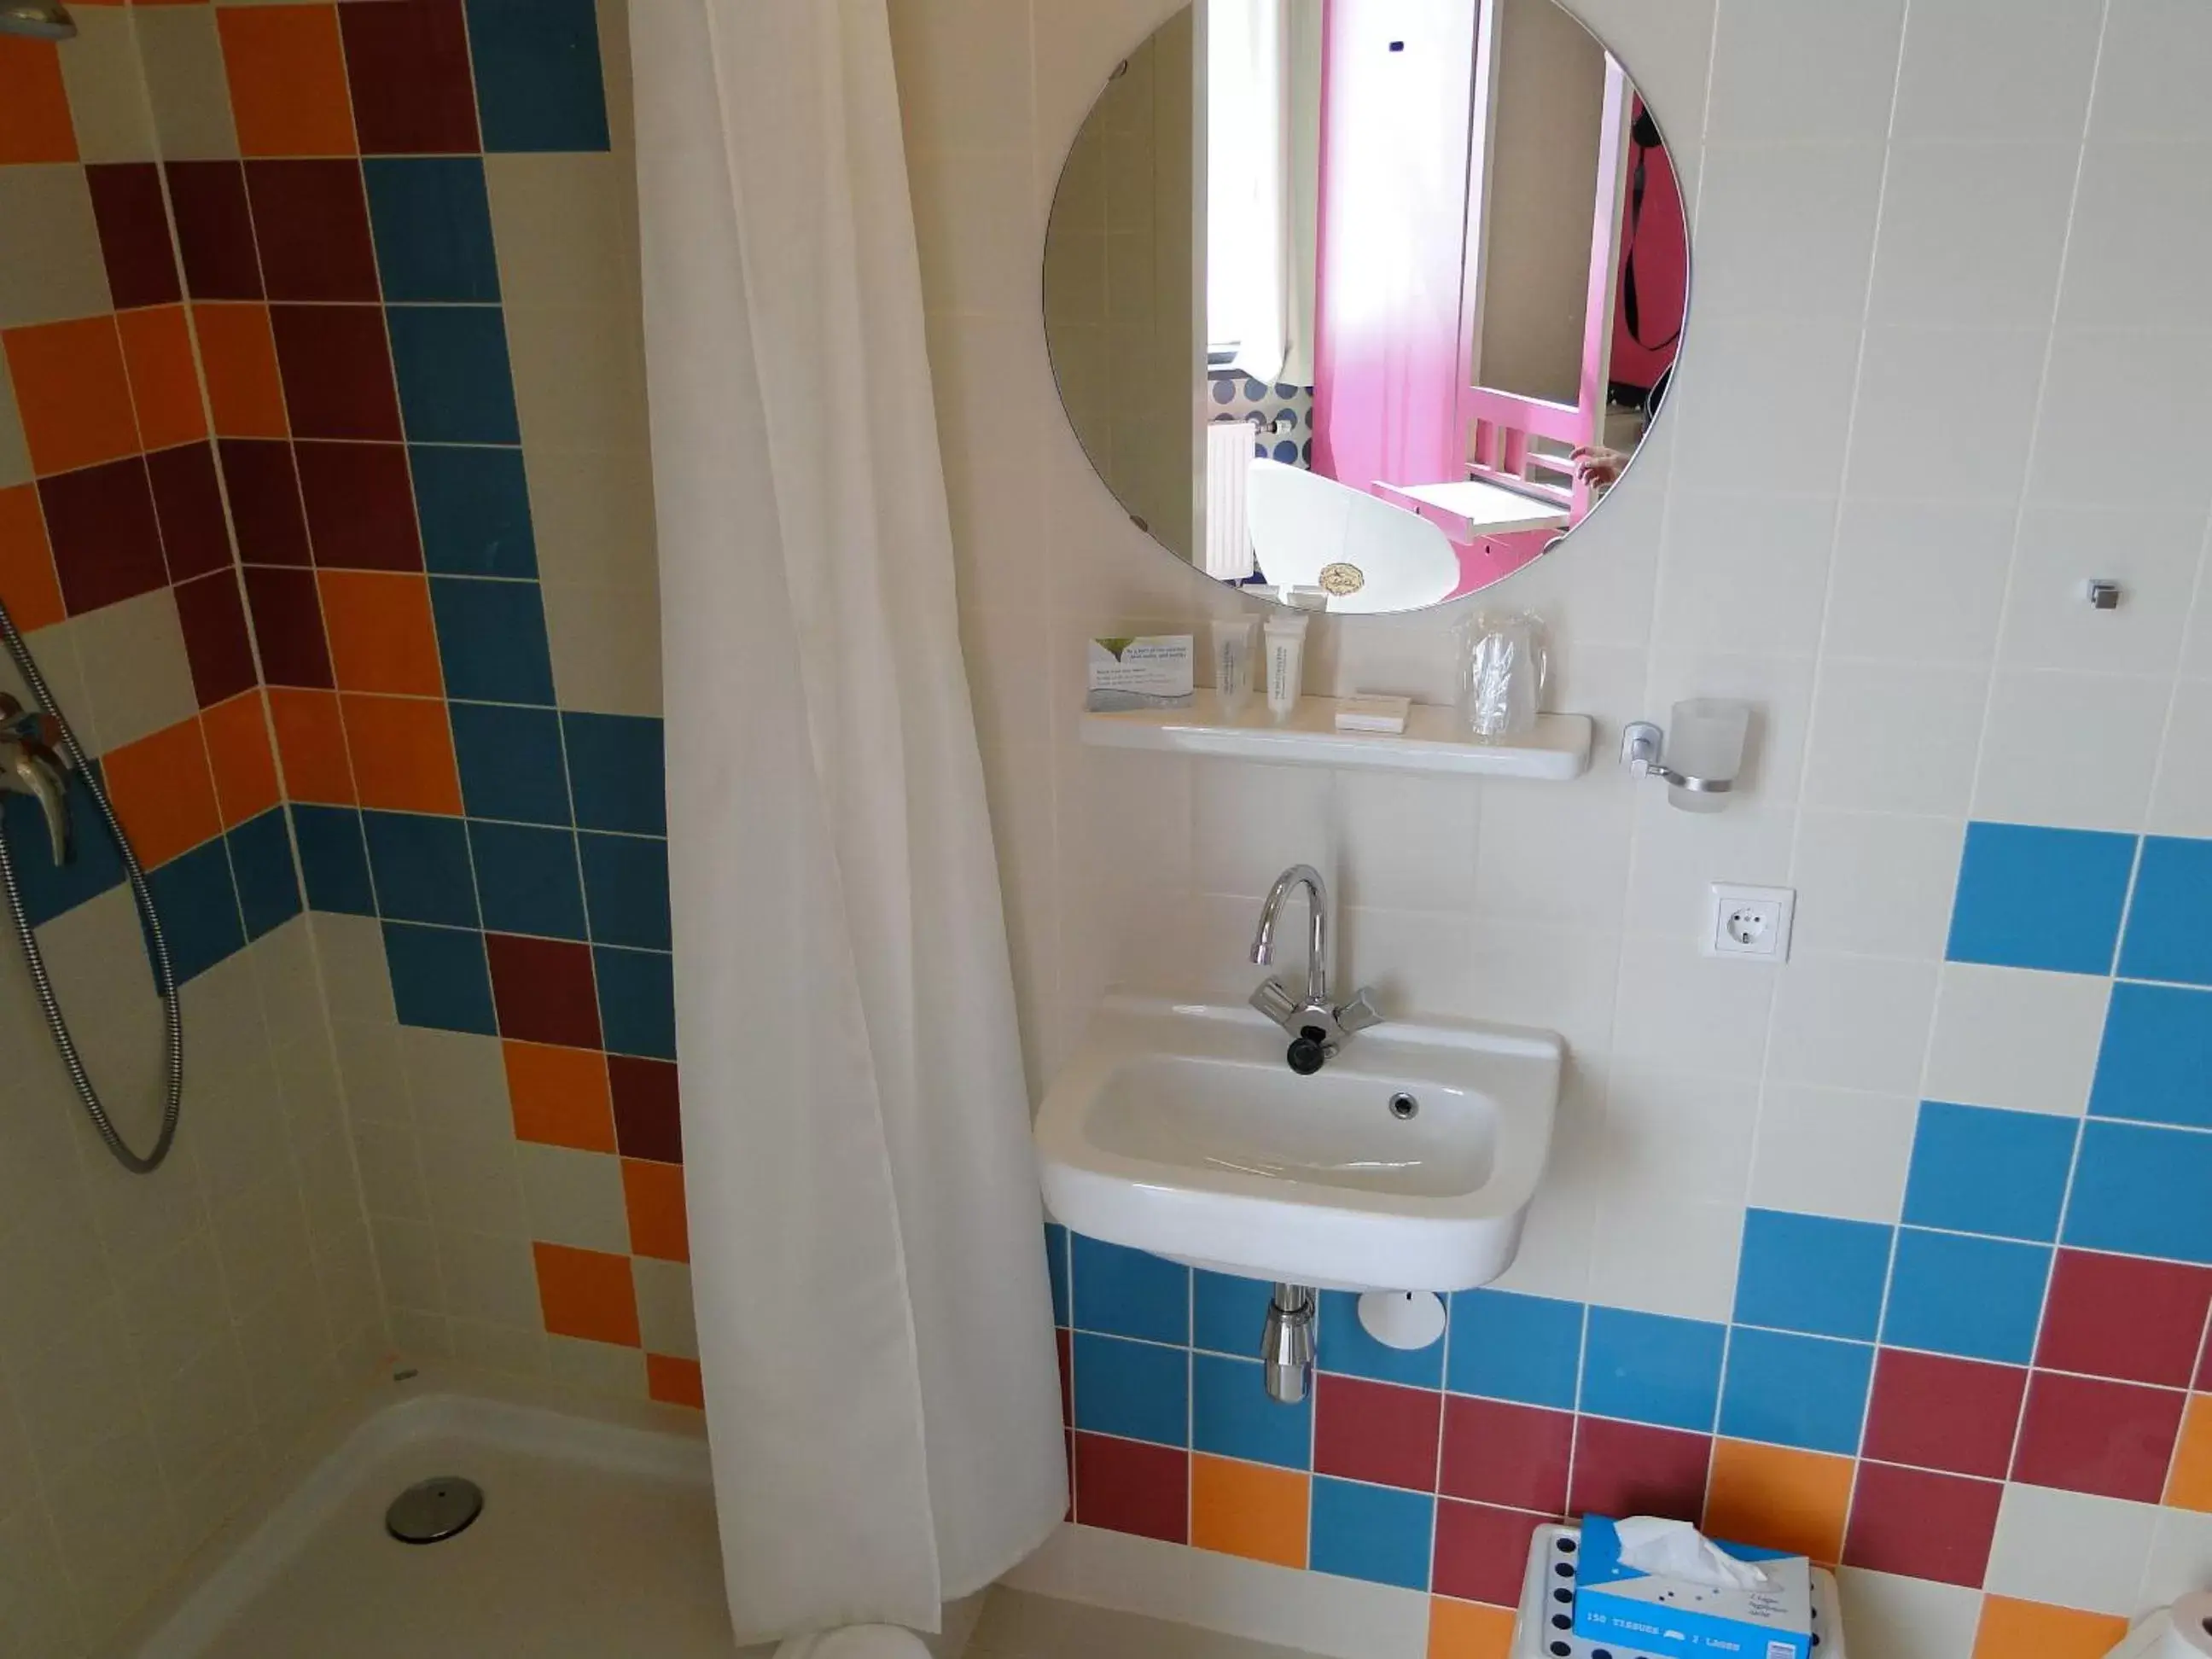 Bathroom in LABnul50 Groningen